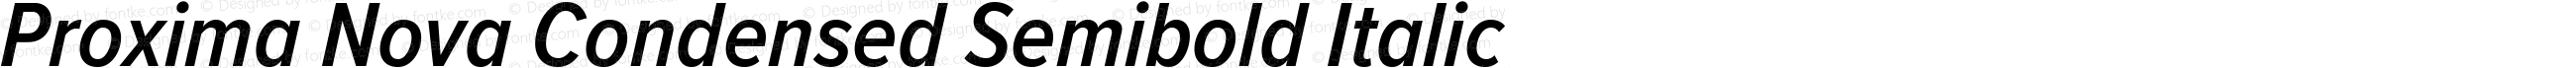 Proxima Nova Condensed Semibold Italic